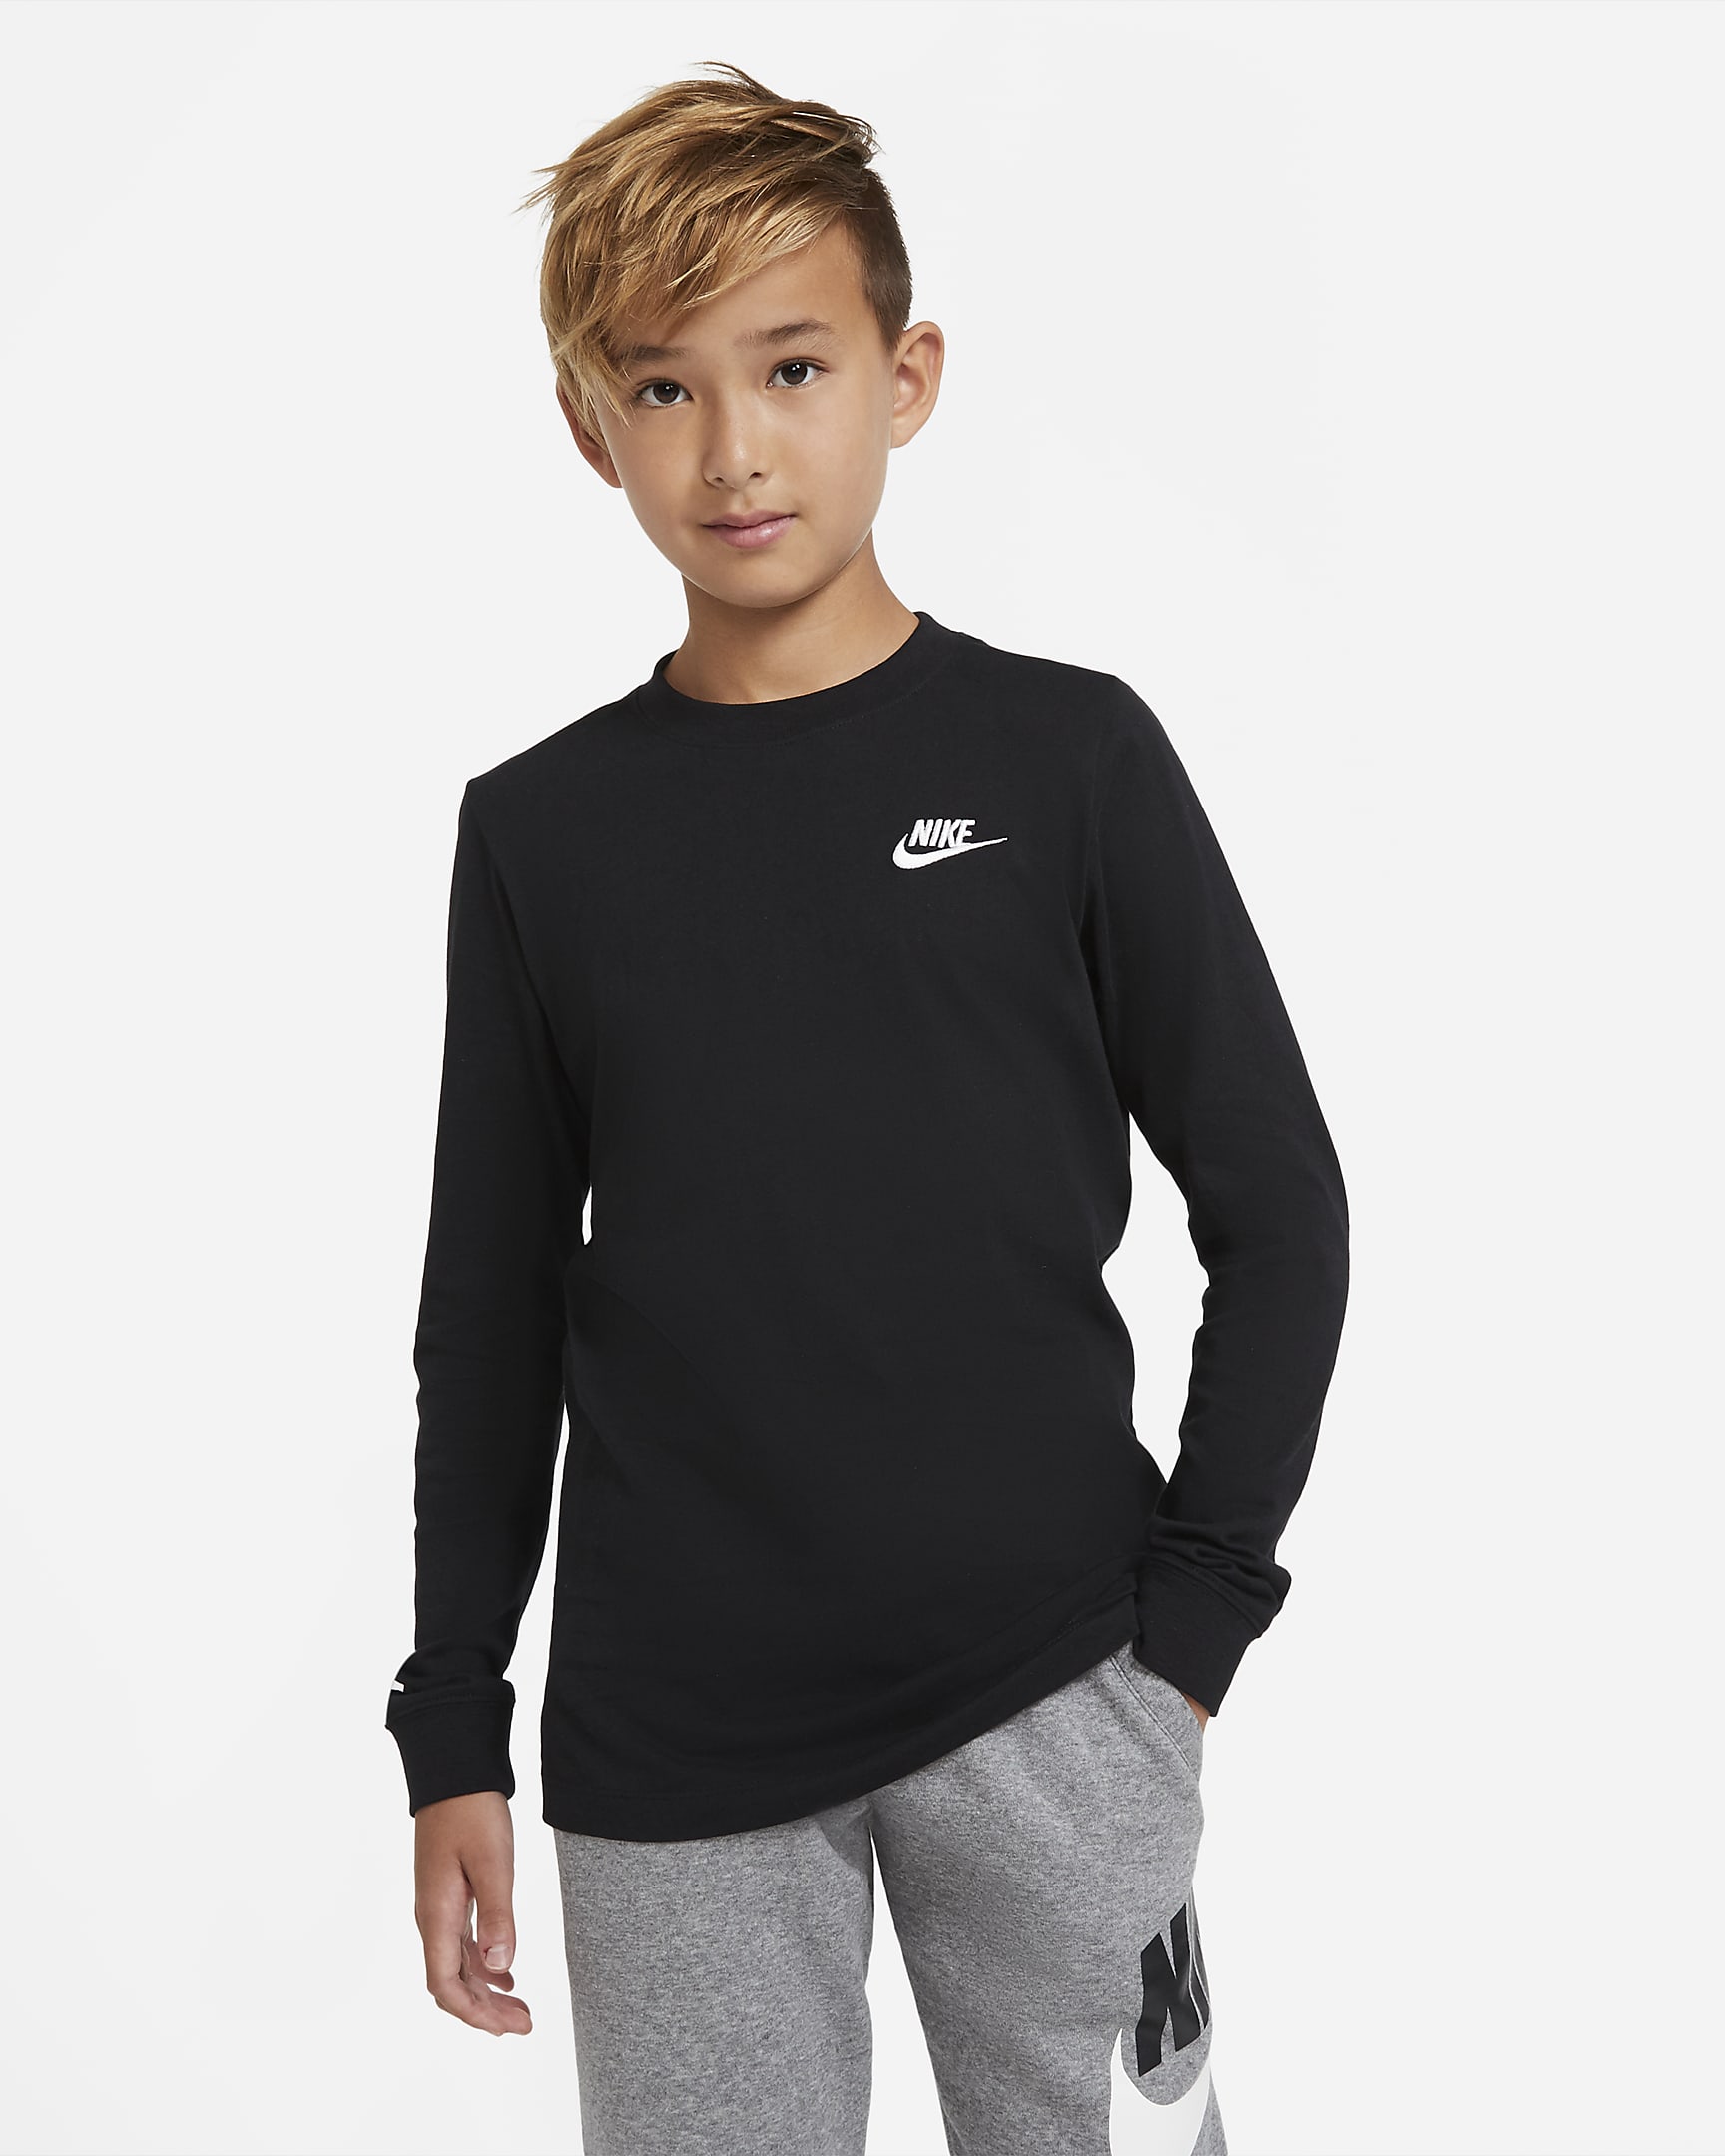 Nike Sportswear Older Kids' (Boys') Long-Sleeve T-Shirt. Nike RO